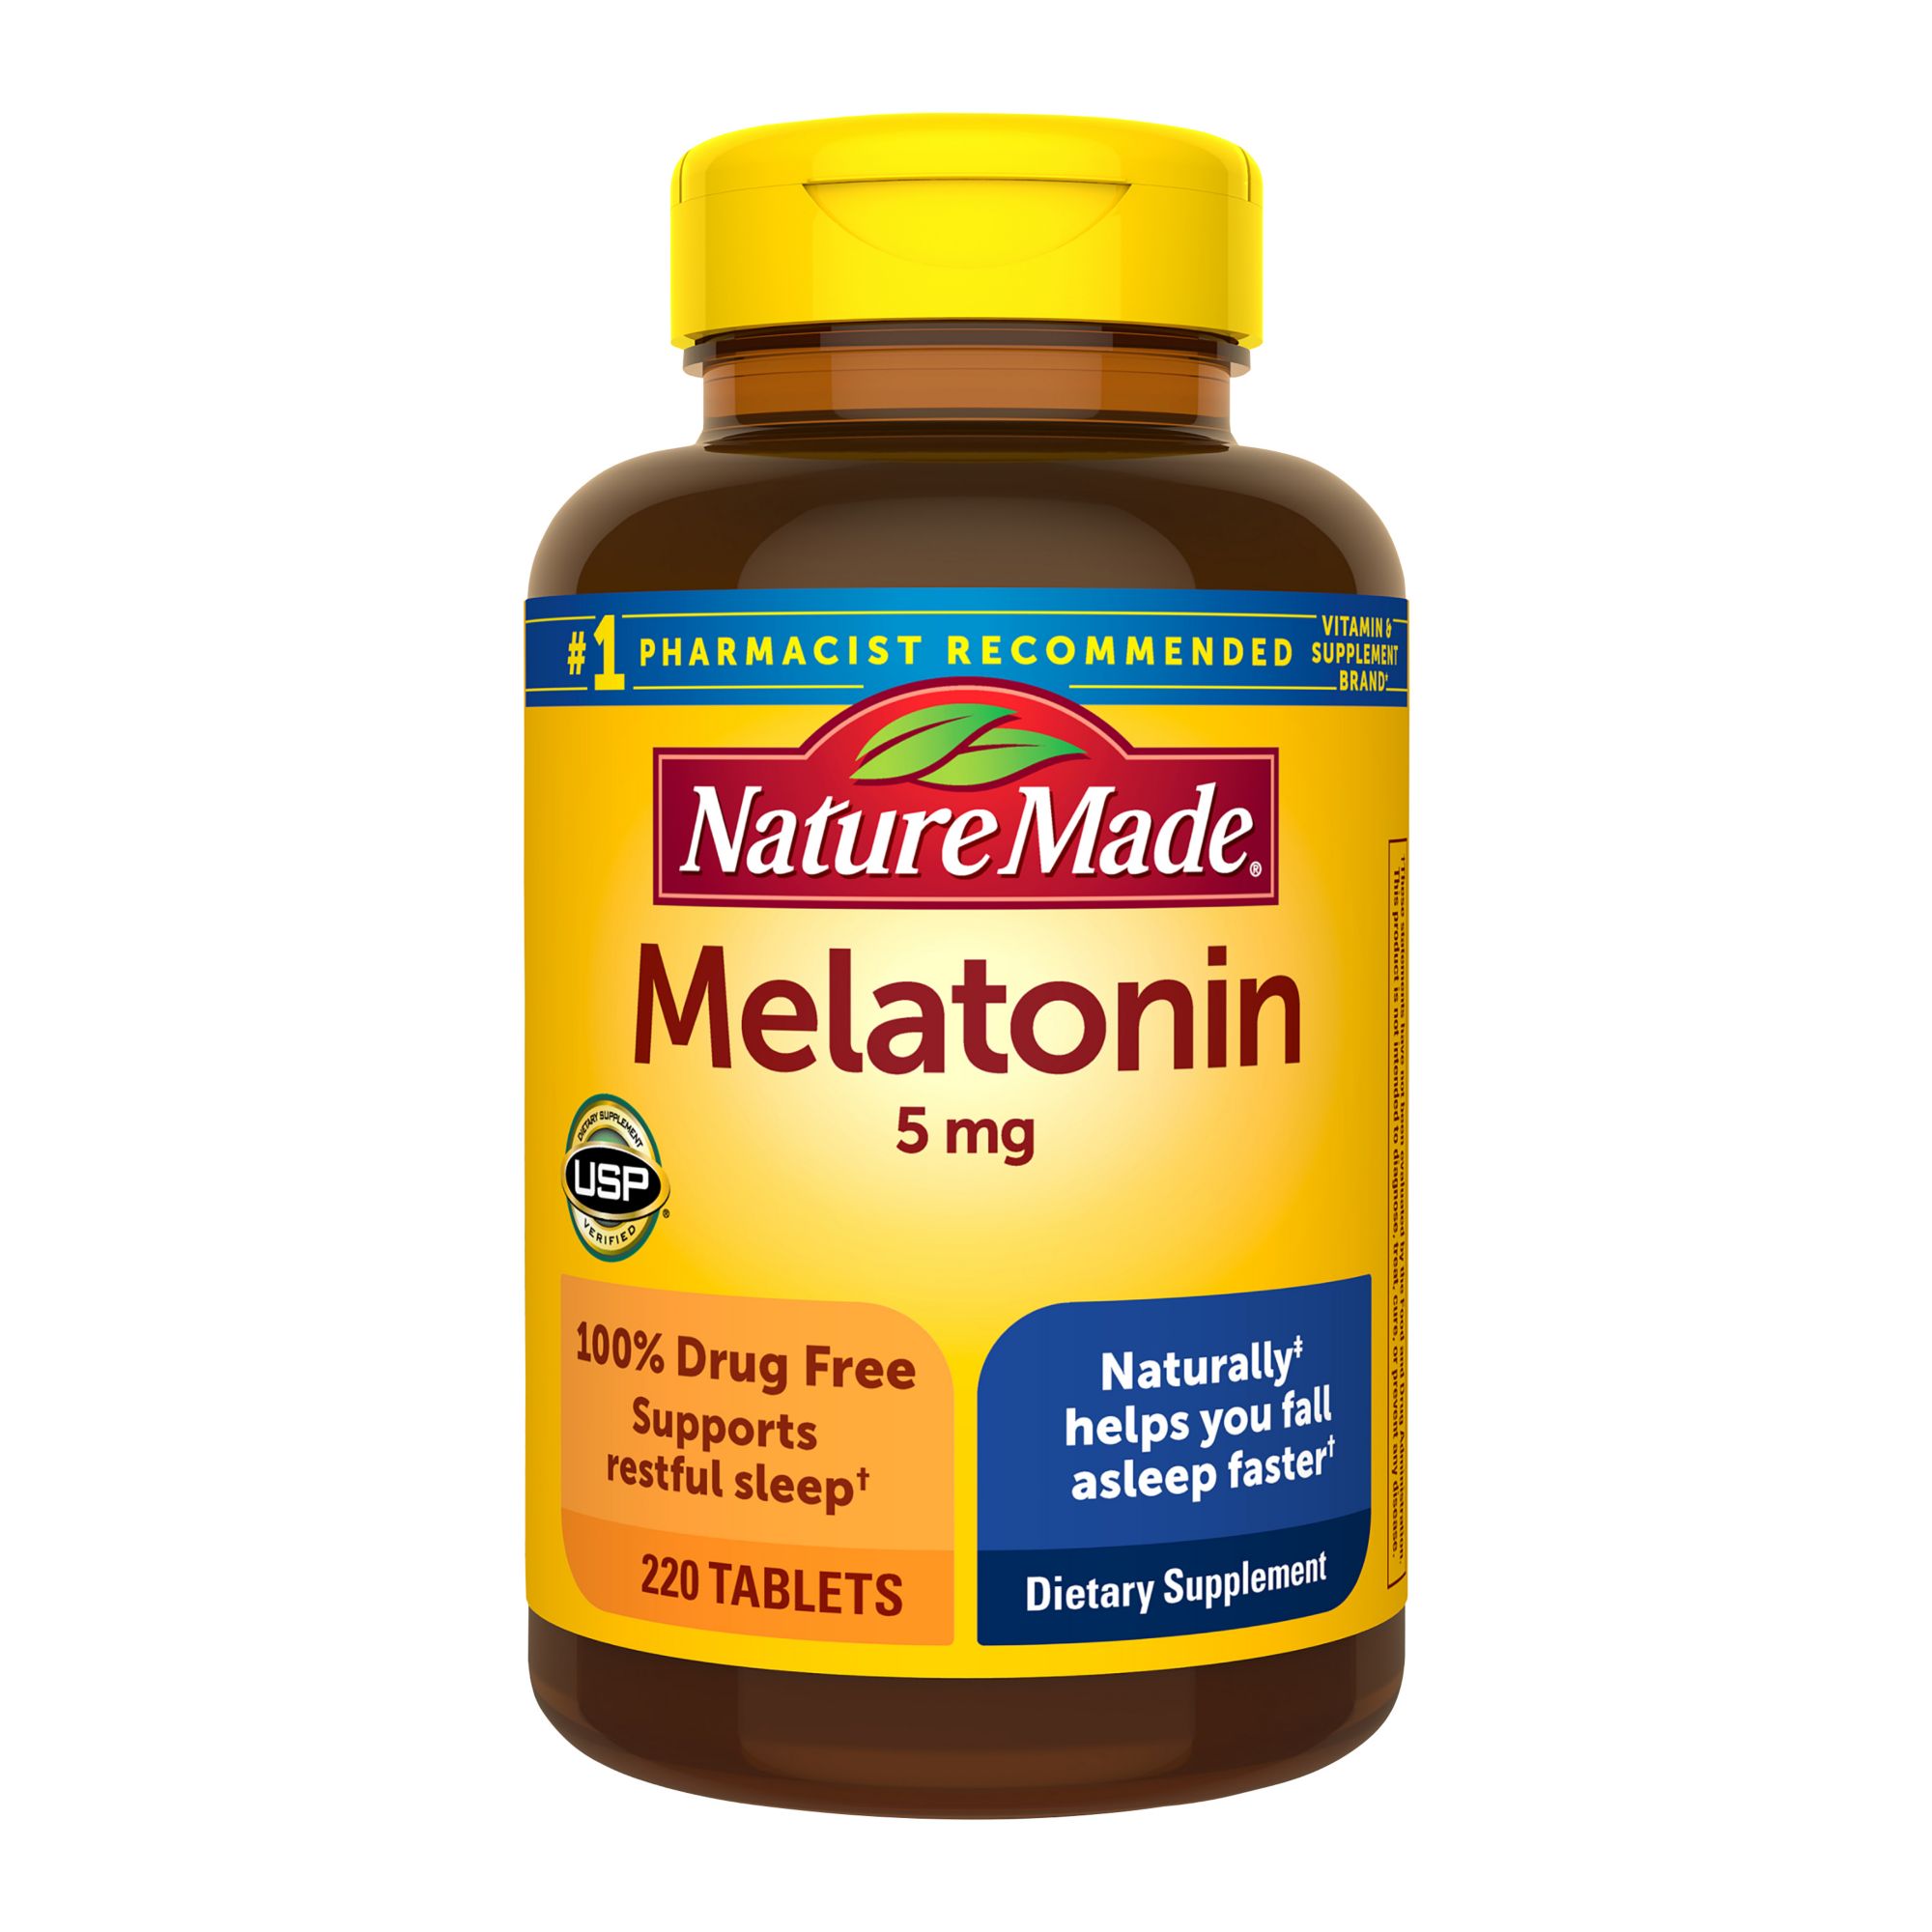 Nature Made Melatonin 5mg Tablets, 220 ct.